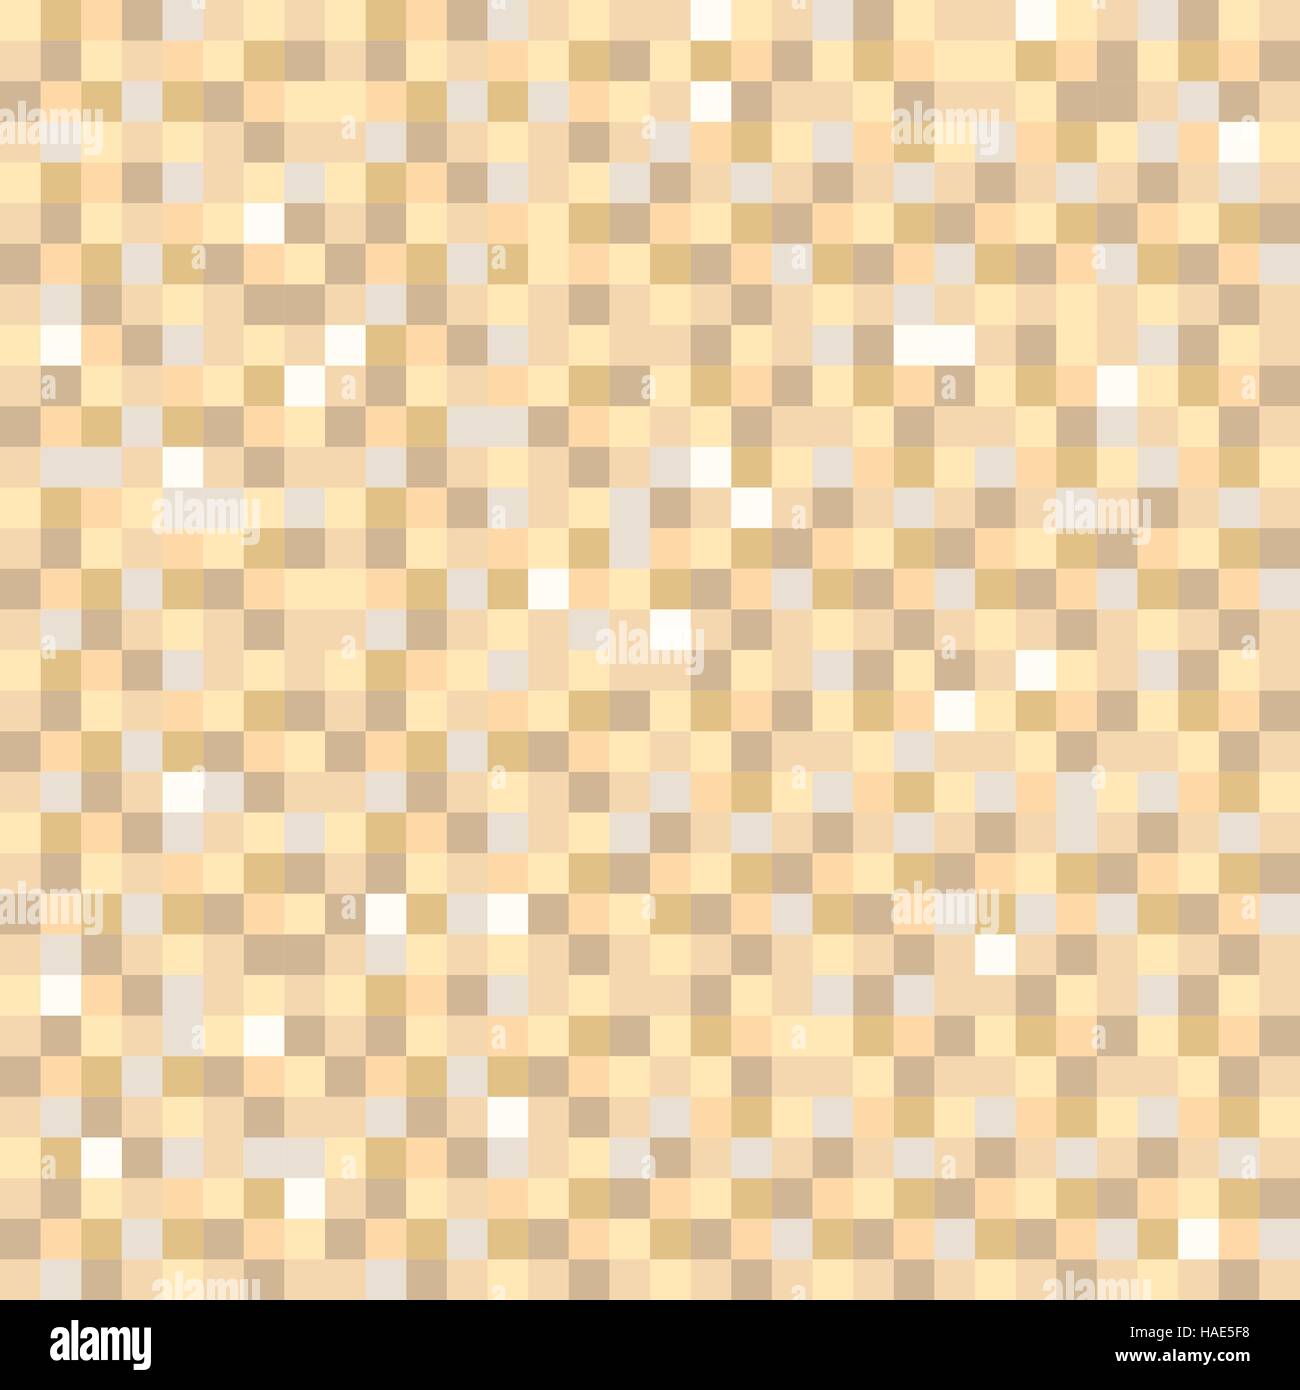 Digital Pixel braun Musterdesign Hintergrund Stock Vektor